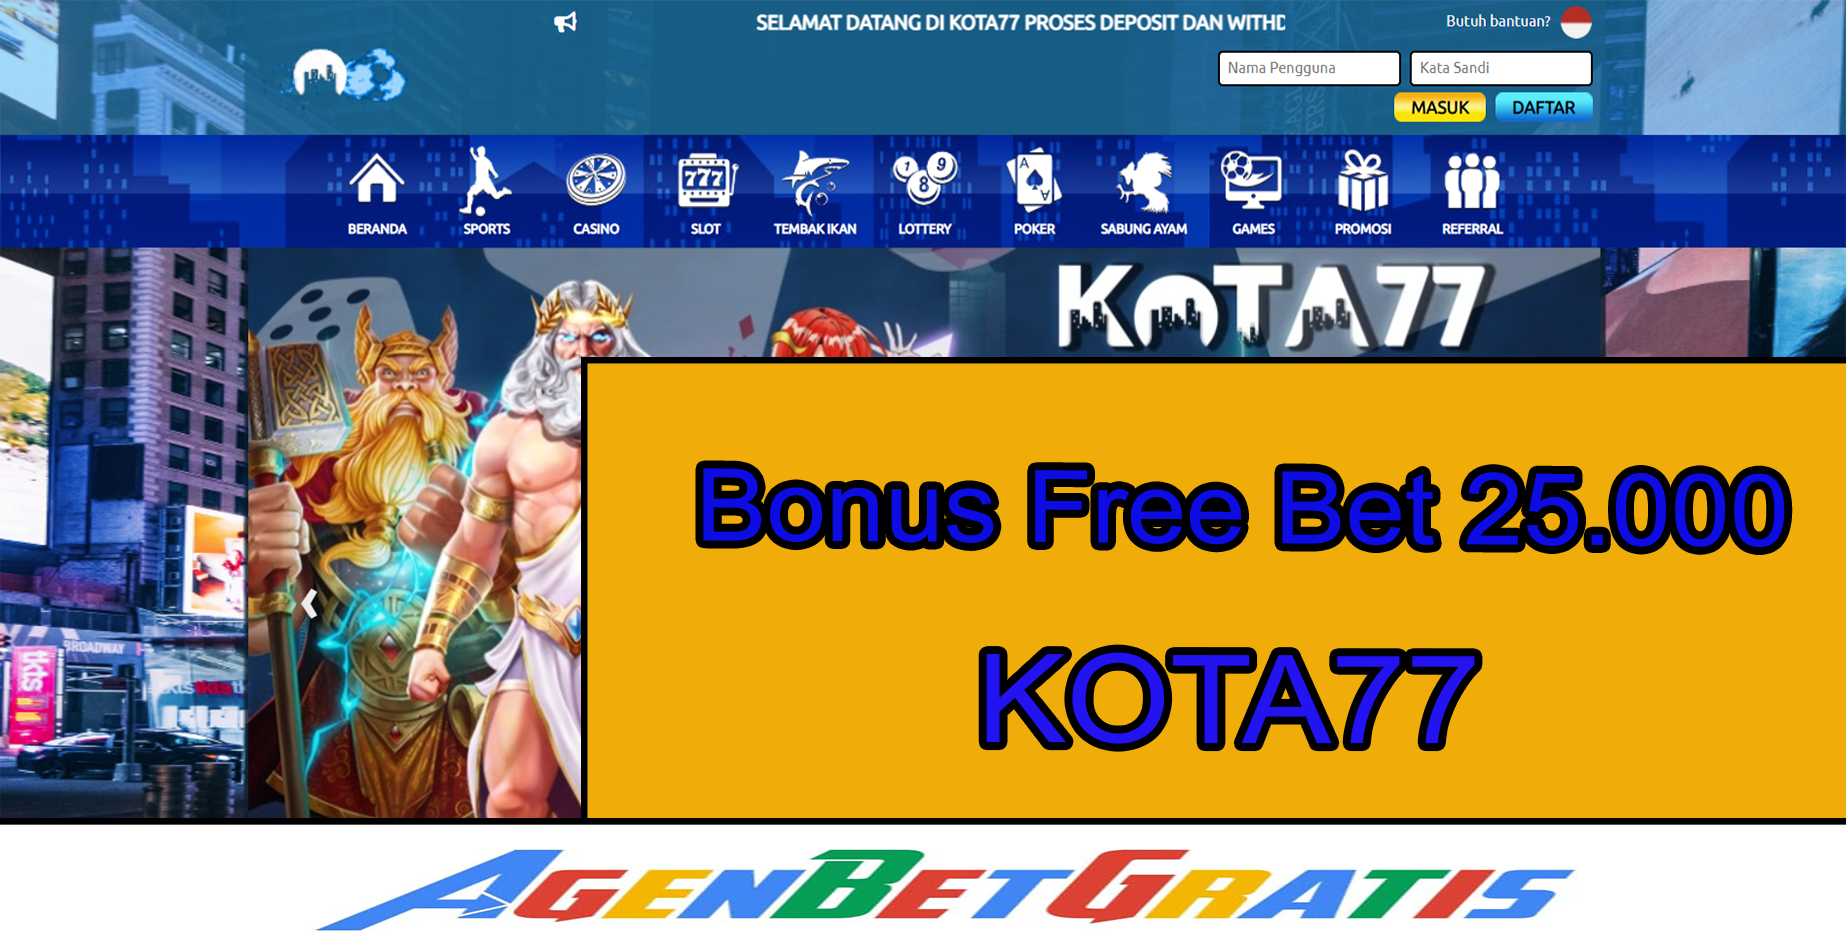 KOTA77 - Bonus FreeBet 25.000